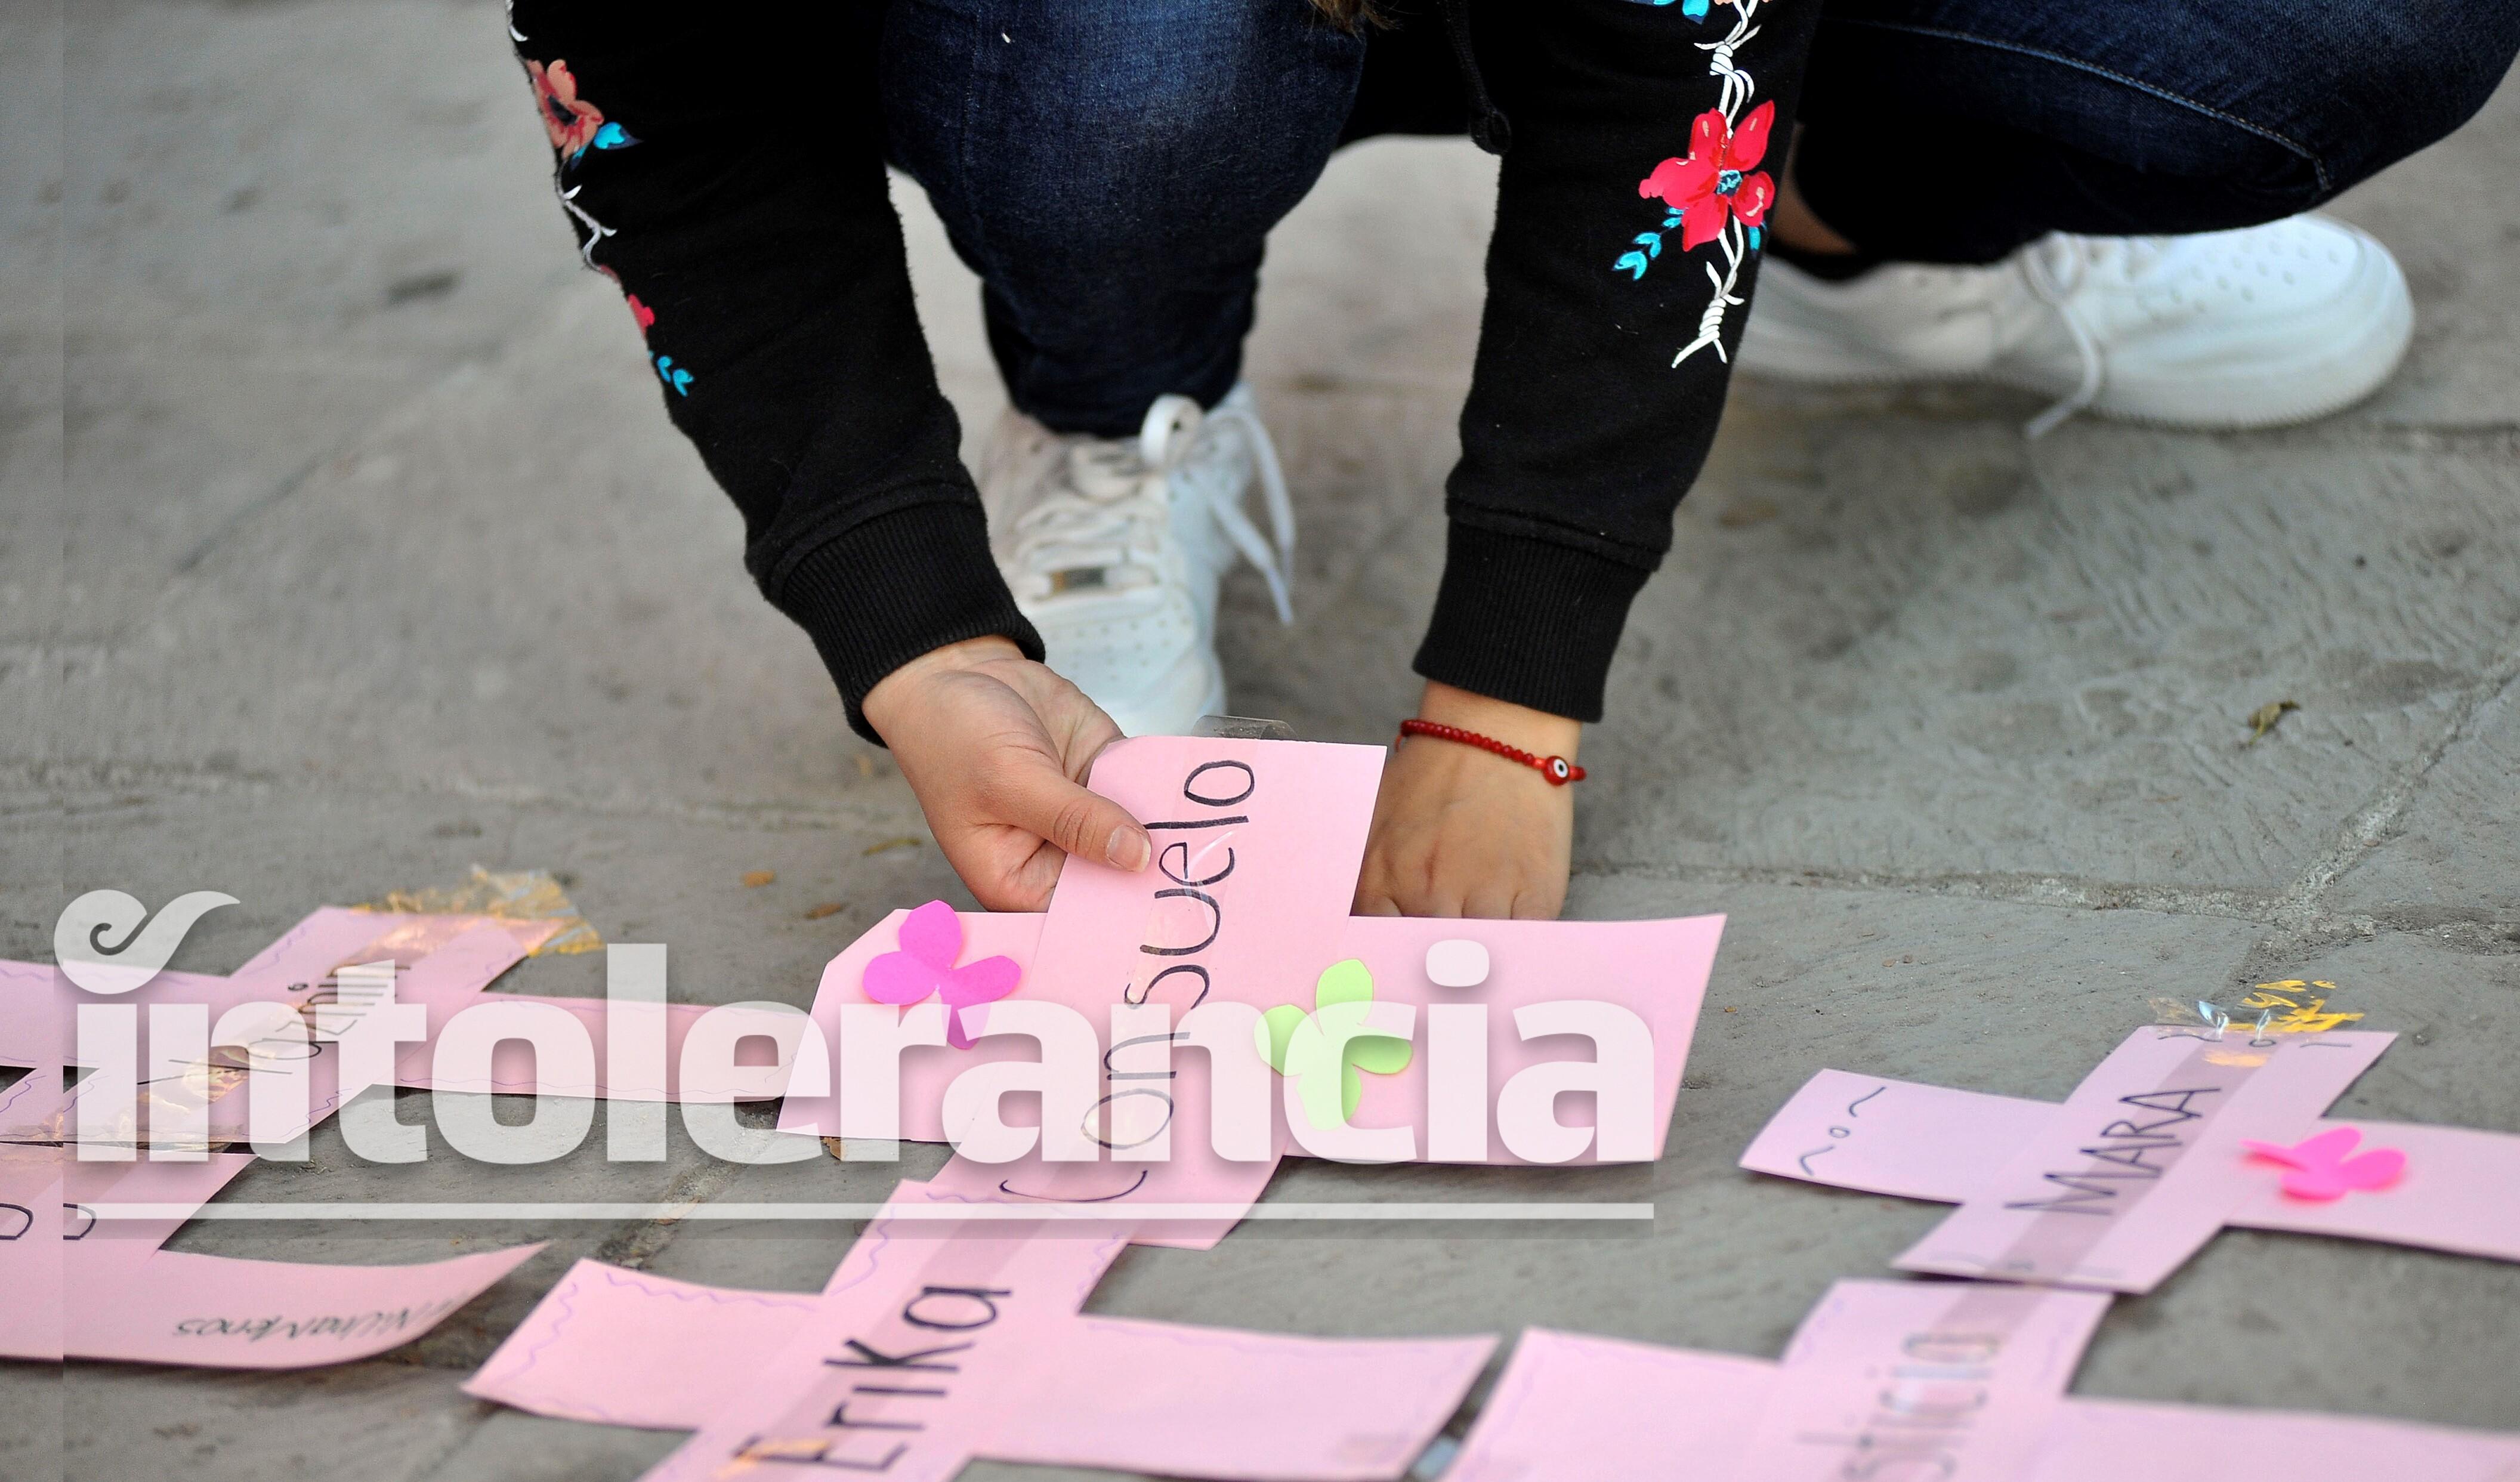 Violencia contra mujeres: una dolorosa radiografía en Tlaxcala